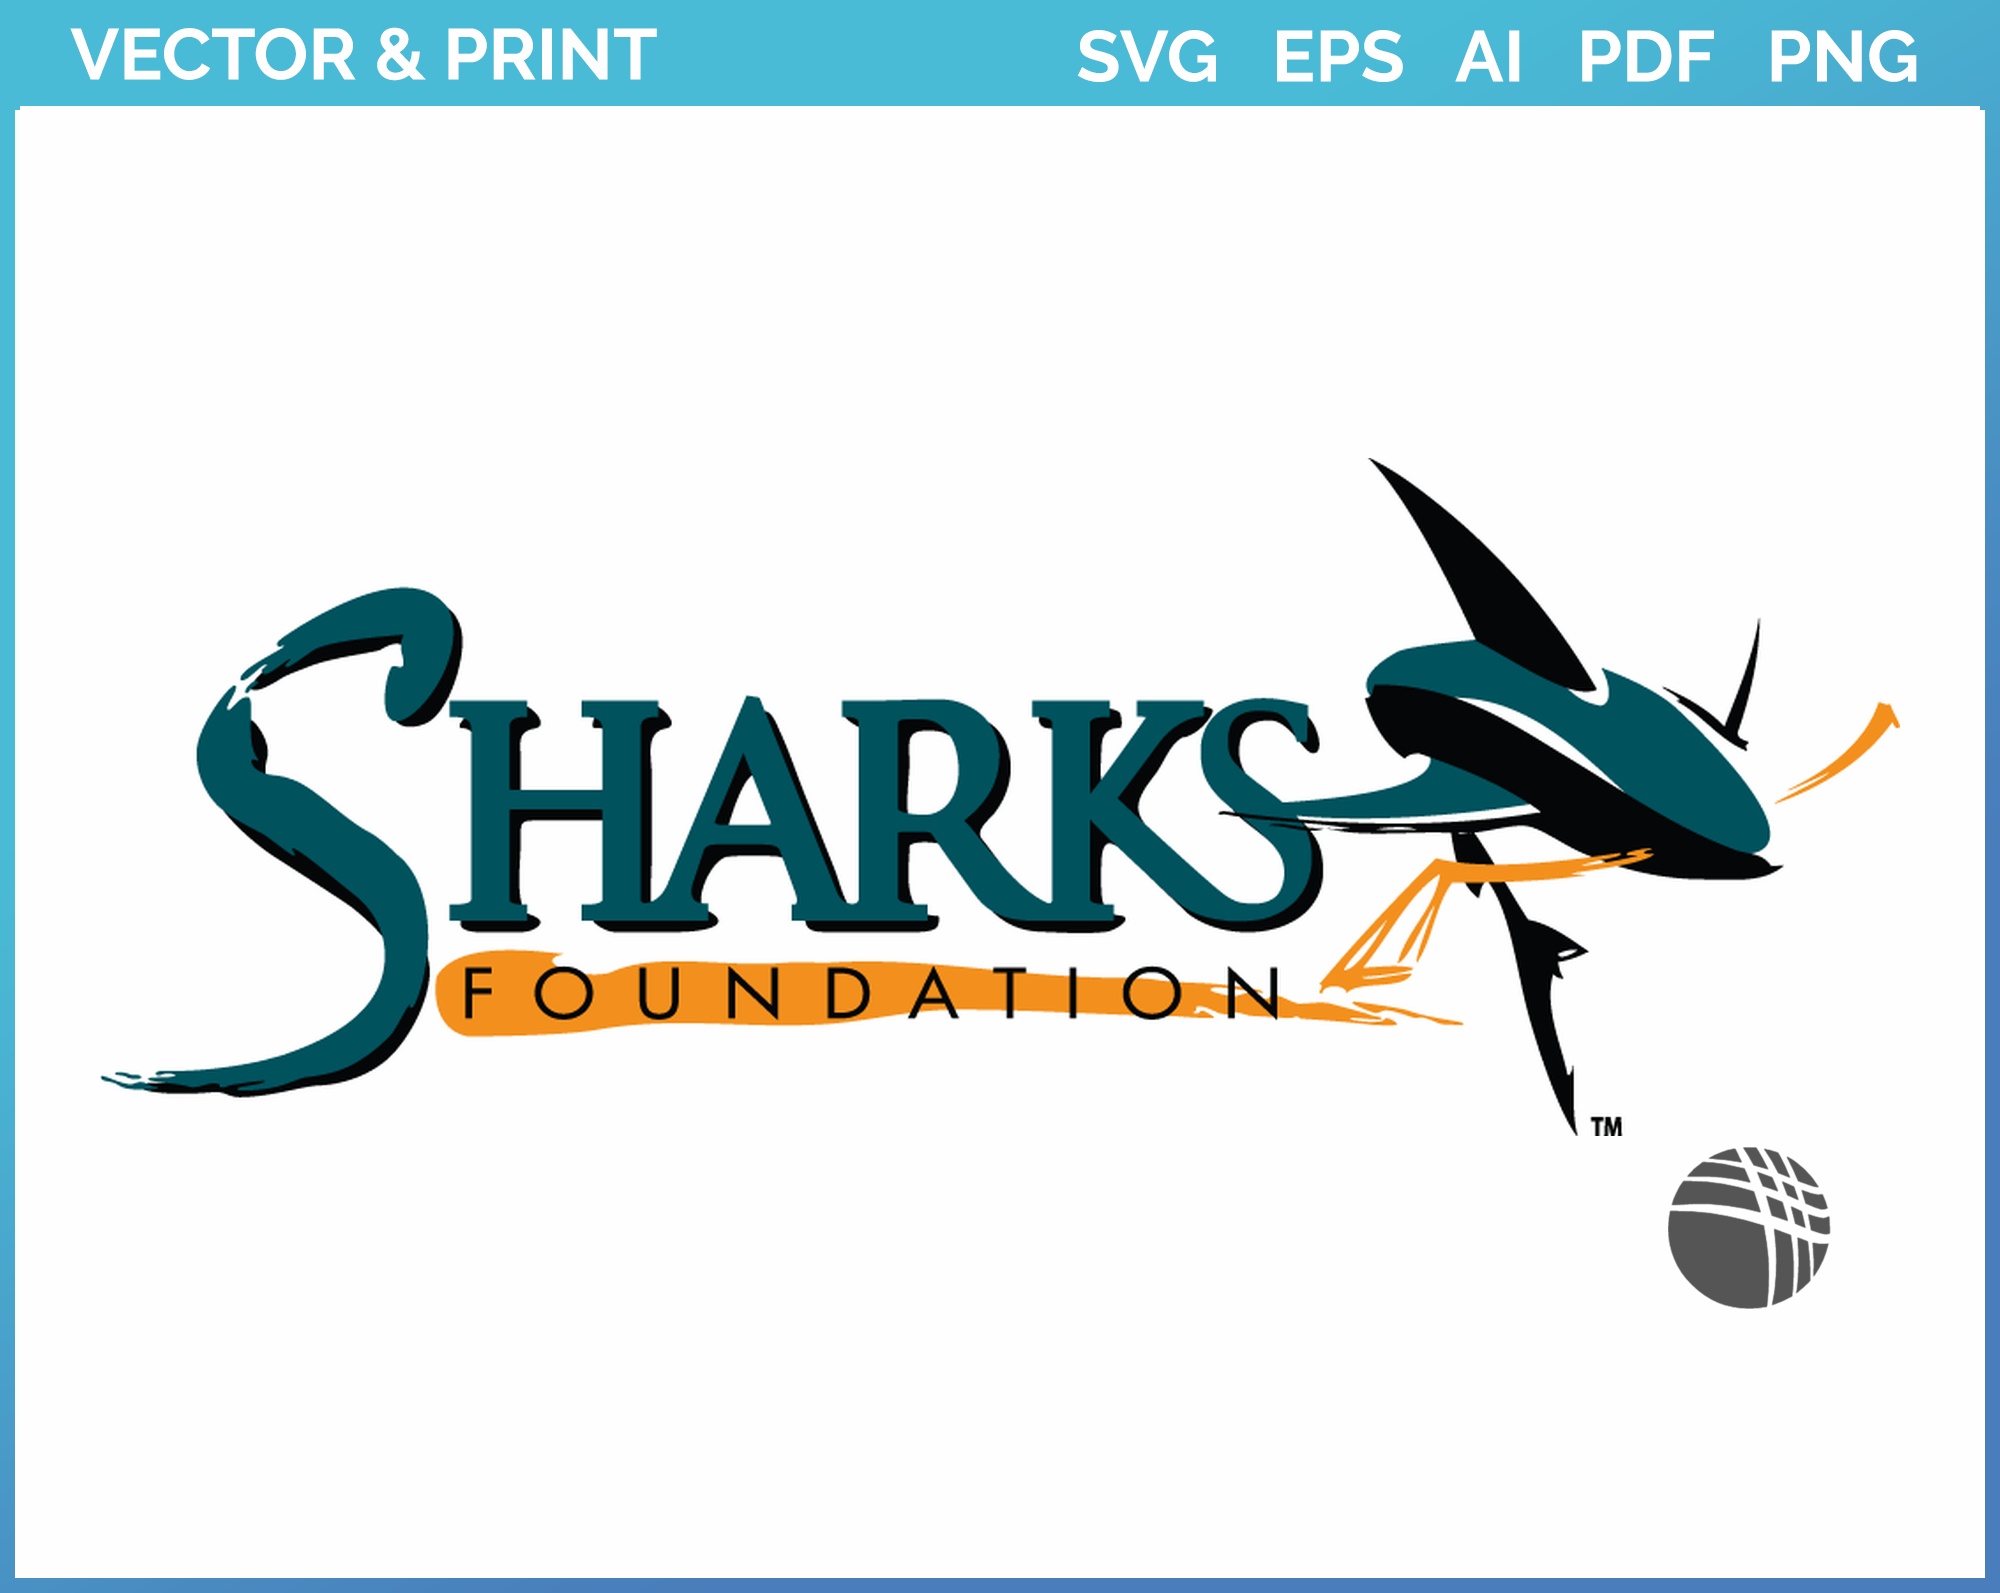 San Jose Sharks Logo PNG Vector (SVG) Free Download